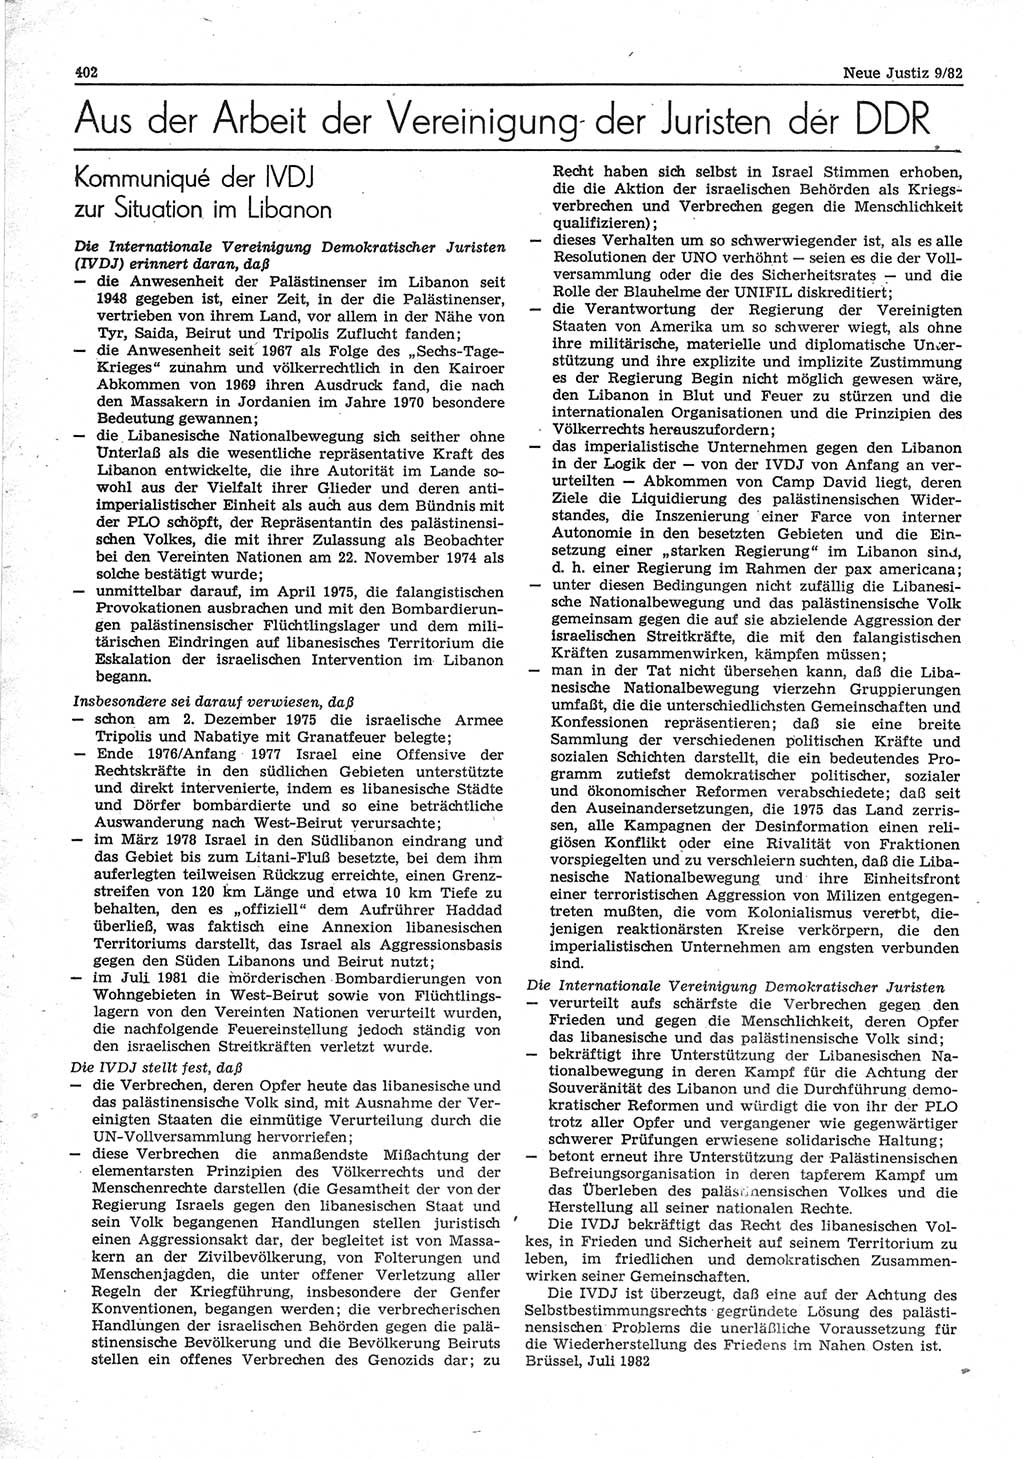 Neue Justiz (NJ), Zeitschrift für sozialistisches Recht und Gesetzlichkeit [Deutsche Demokratische Republik (DDR)], 36. Jahrgang 1982, Seite 402 (NJ DDR 1982, S. 402)